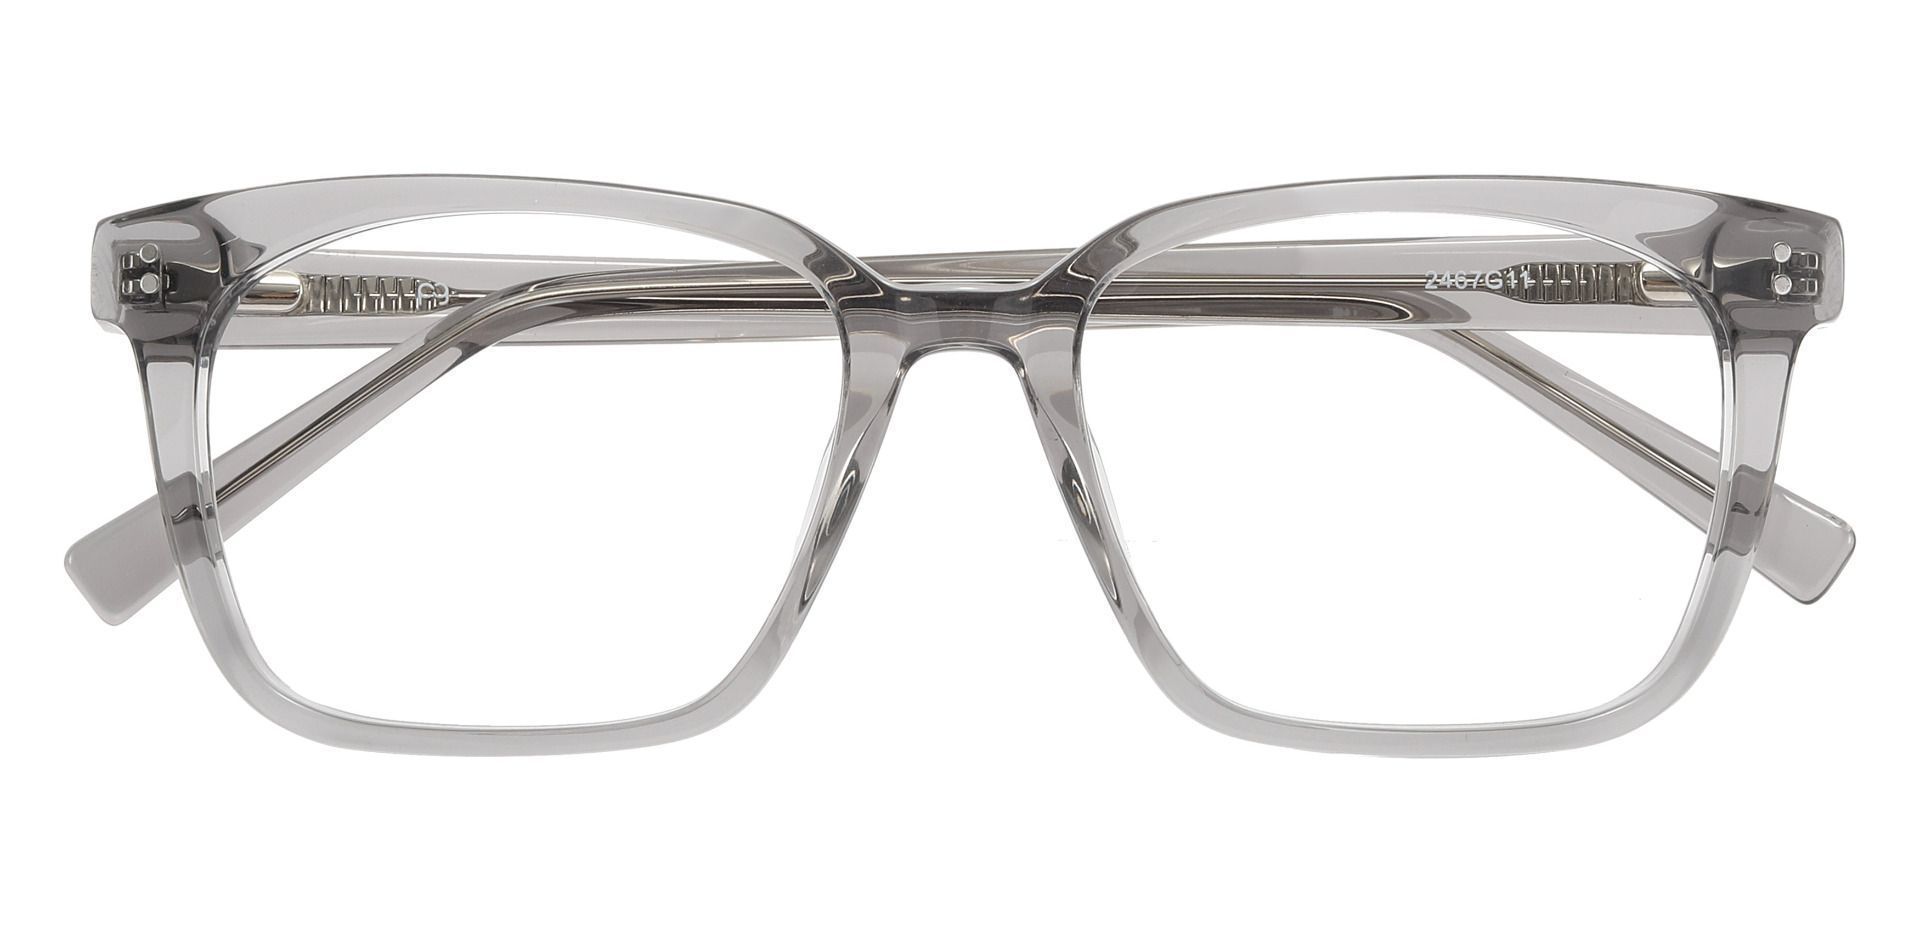 Apex Rectangle Progressive Glasses - Gray